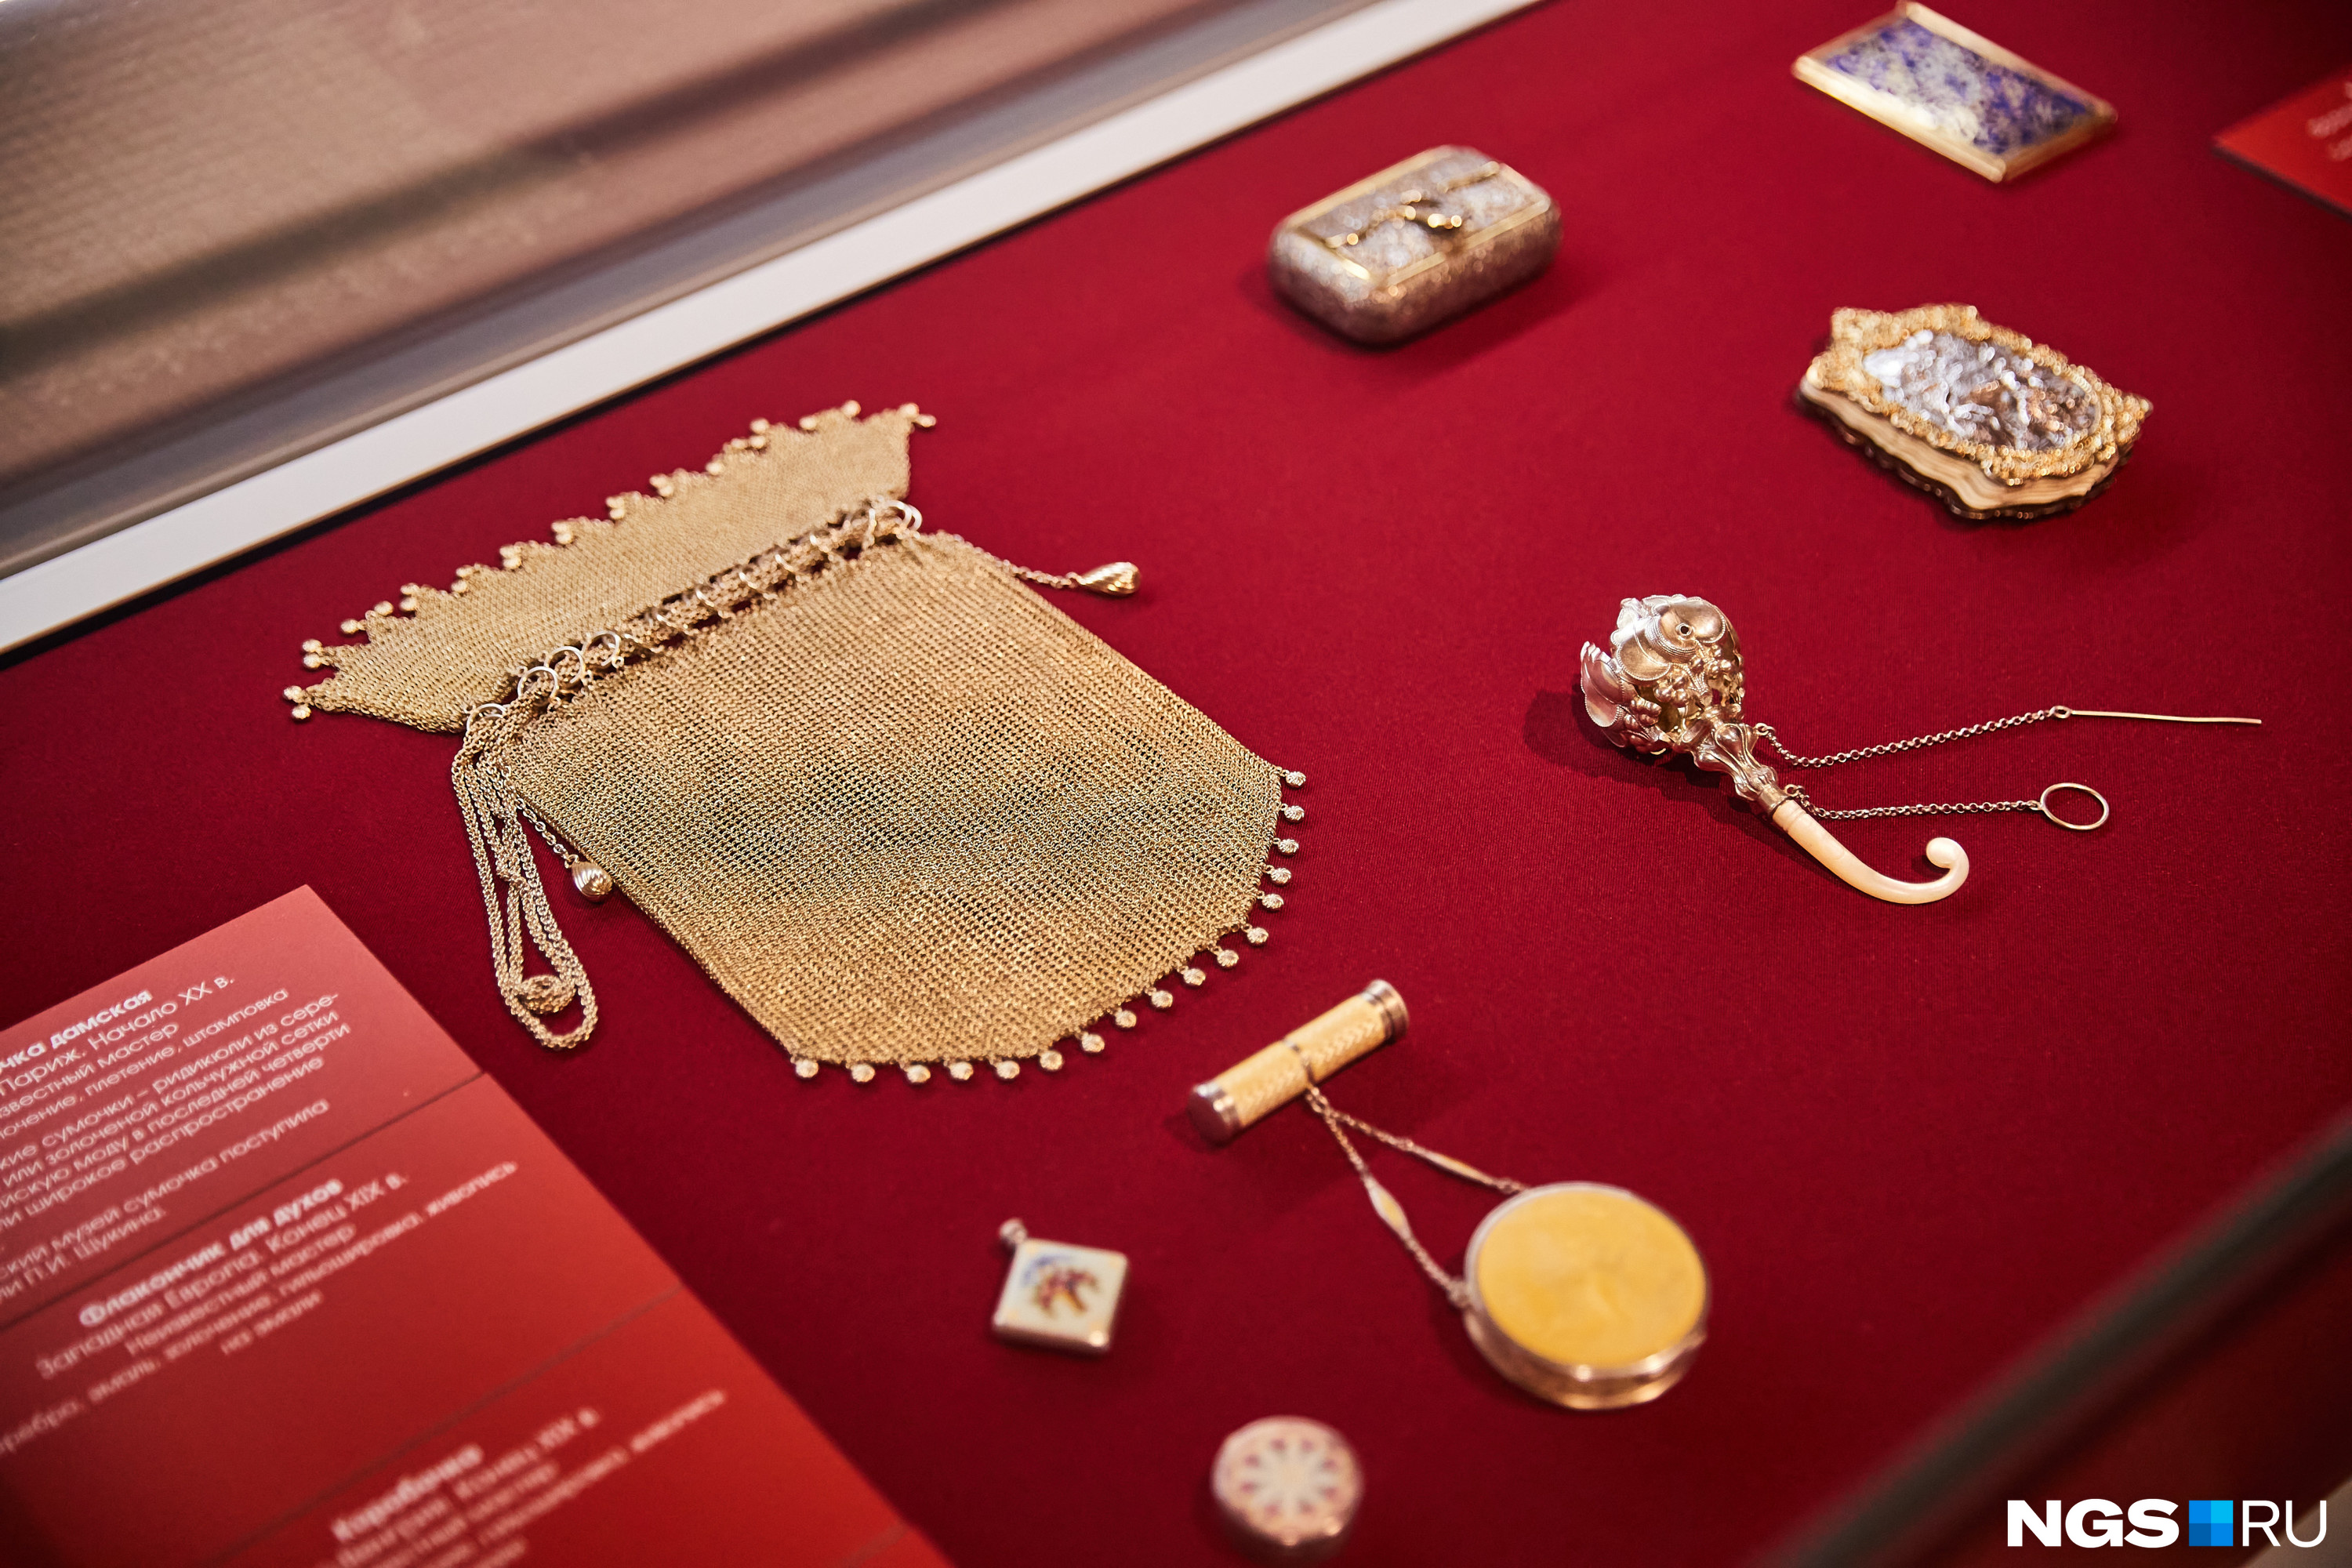 Дамская сумочка из серебра была создана во Франции в начале XX века